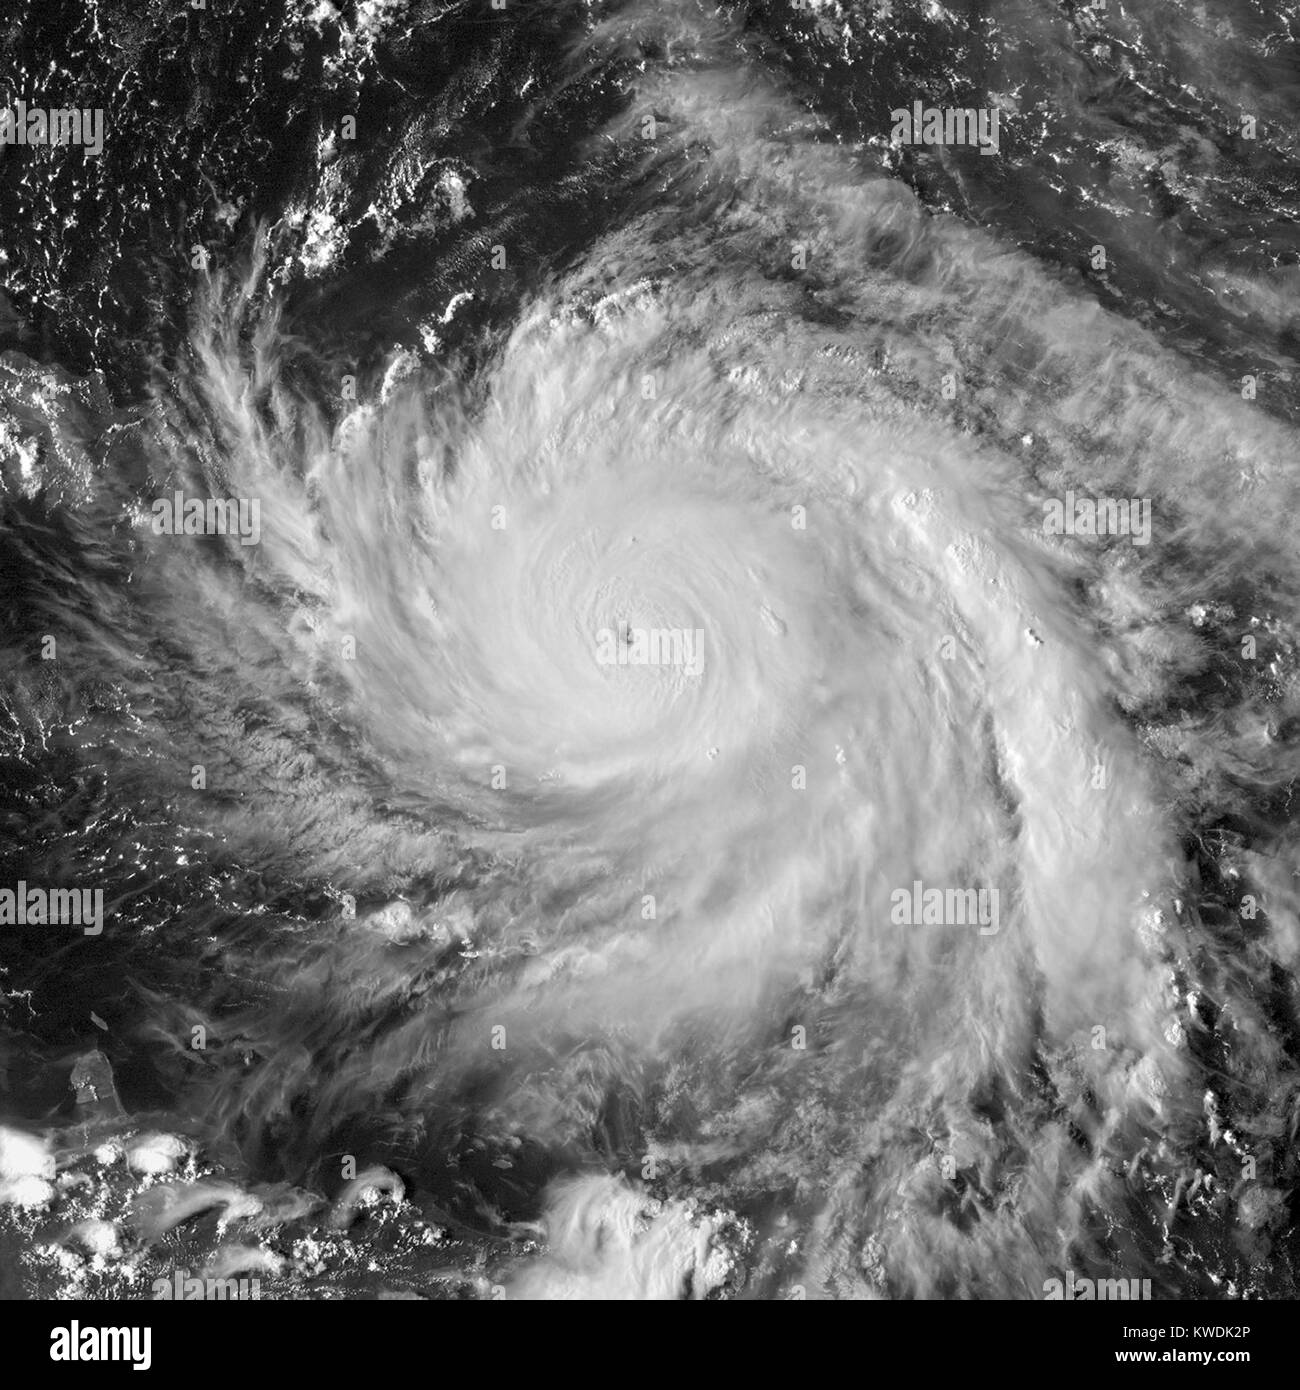 Immagine satellitare di uragano Maria nei pressi di intensità del picco a nord-ovest della Dominica a sett. 19, 2017. Ella ha causato la peggiore catastrofe naturale per registrare in Dominica. Il 7 settembre 20, Maria ha colpito Puerto Rico, causando danni irreparabili e una continua crisi umanitaria (BSLOC 2017 18 174) Foto Stock